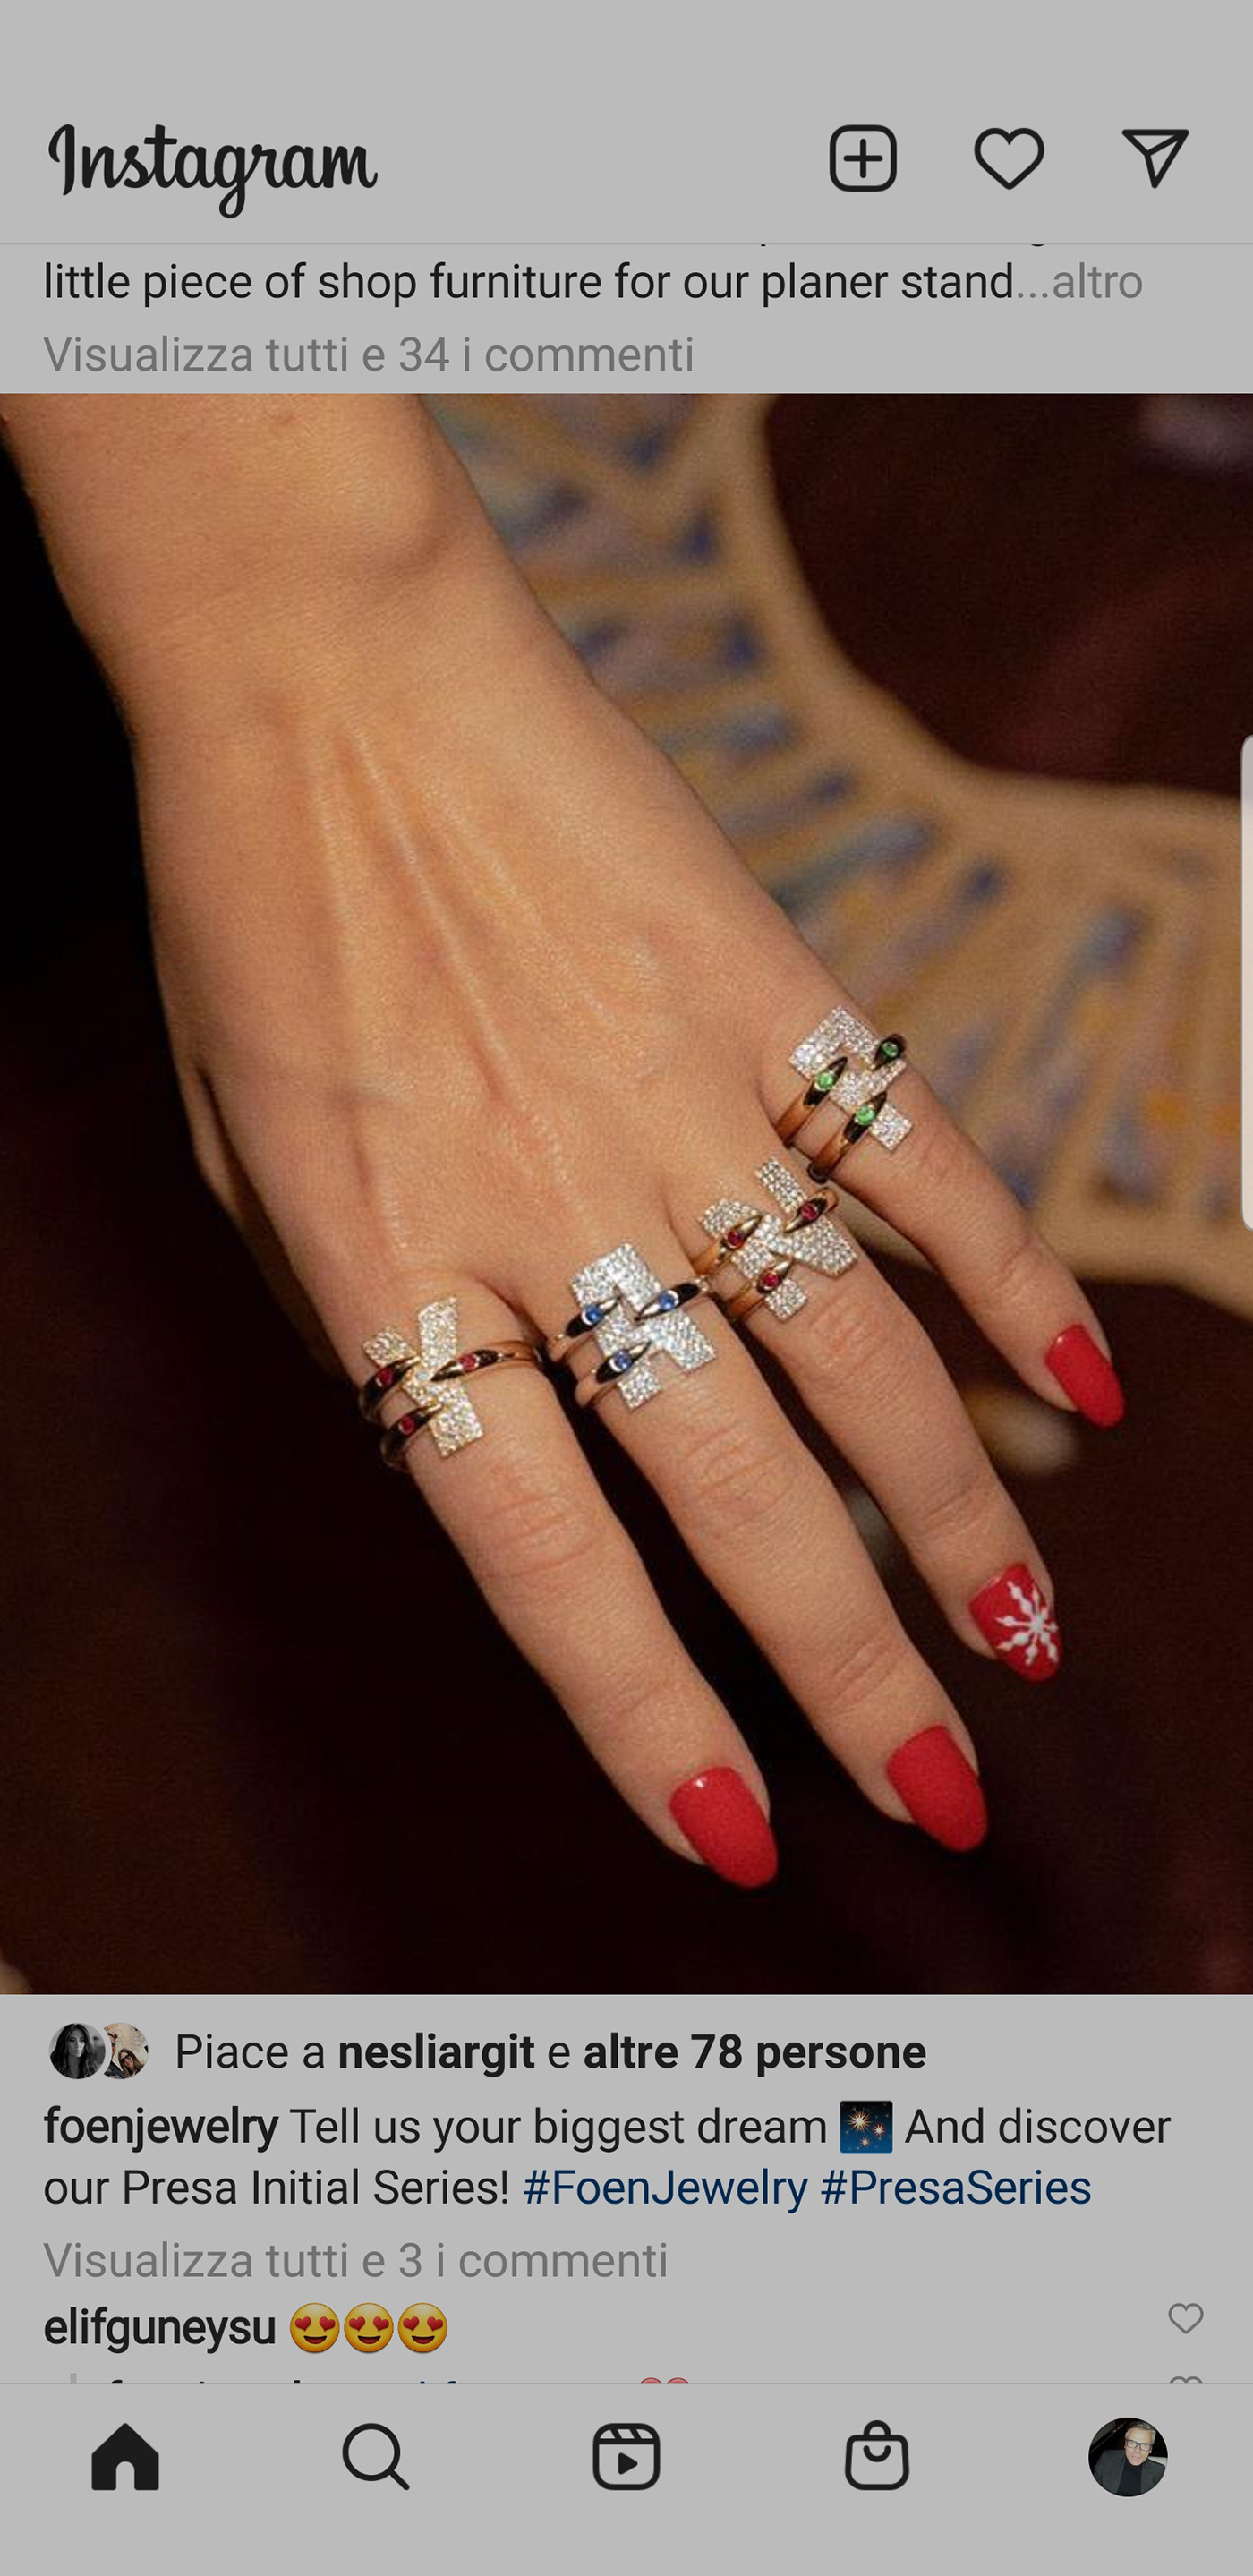 anelli anello angelo bellafante argento design diamanti gioielli oro RUBINI smeraldi